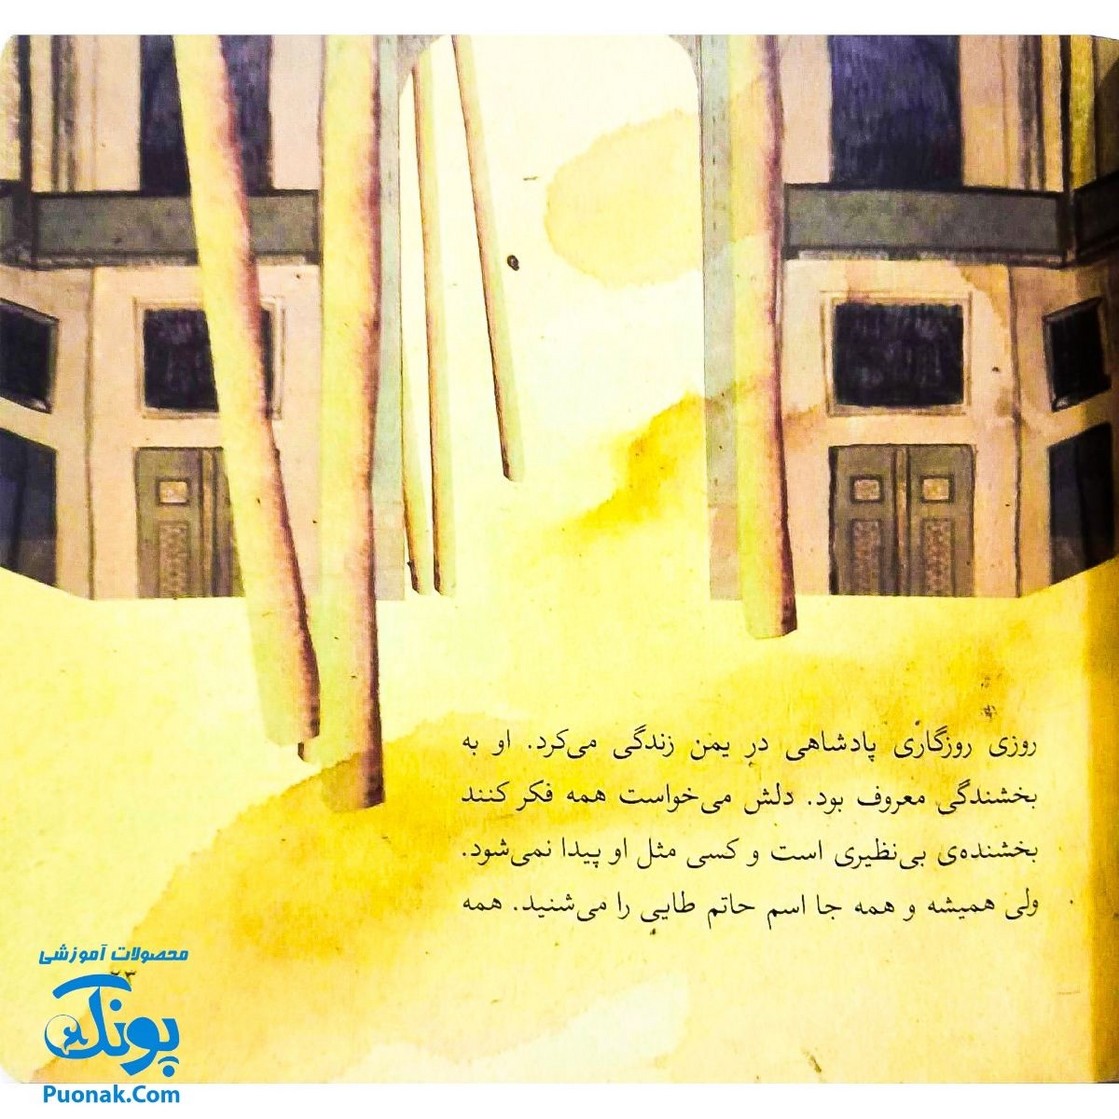 کتاب مجموعه قصه های قشنگ و قدیمی جلد ۴ چهارم ۶ قصه از بوستان سعدی